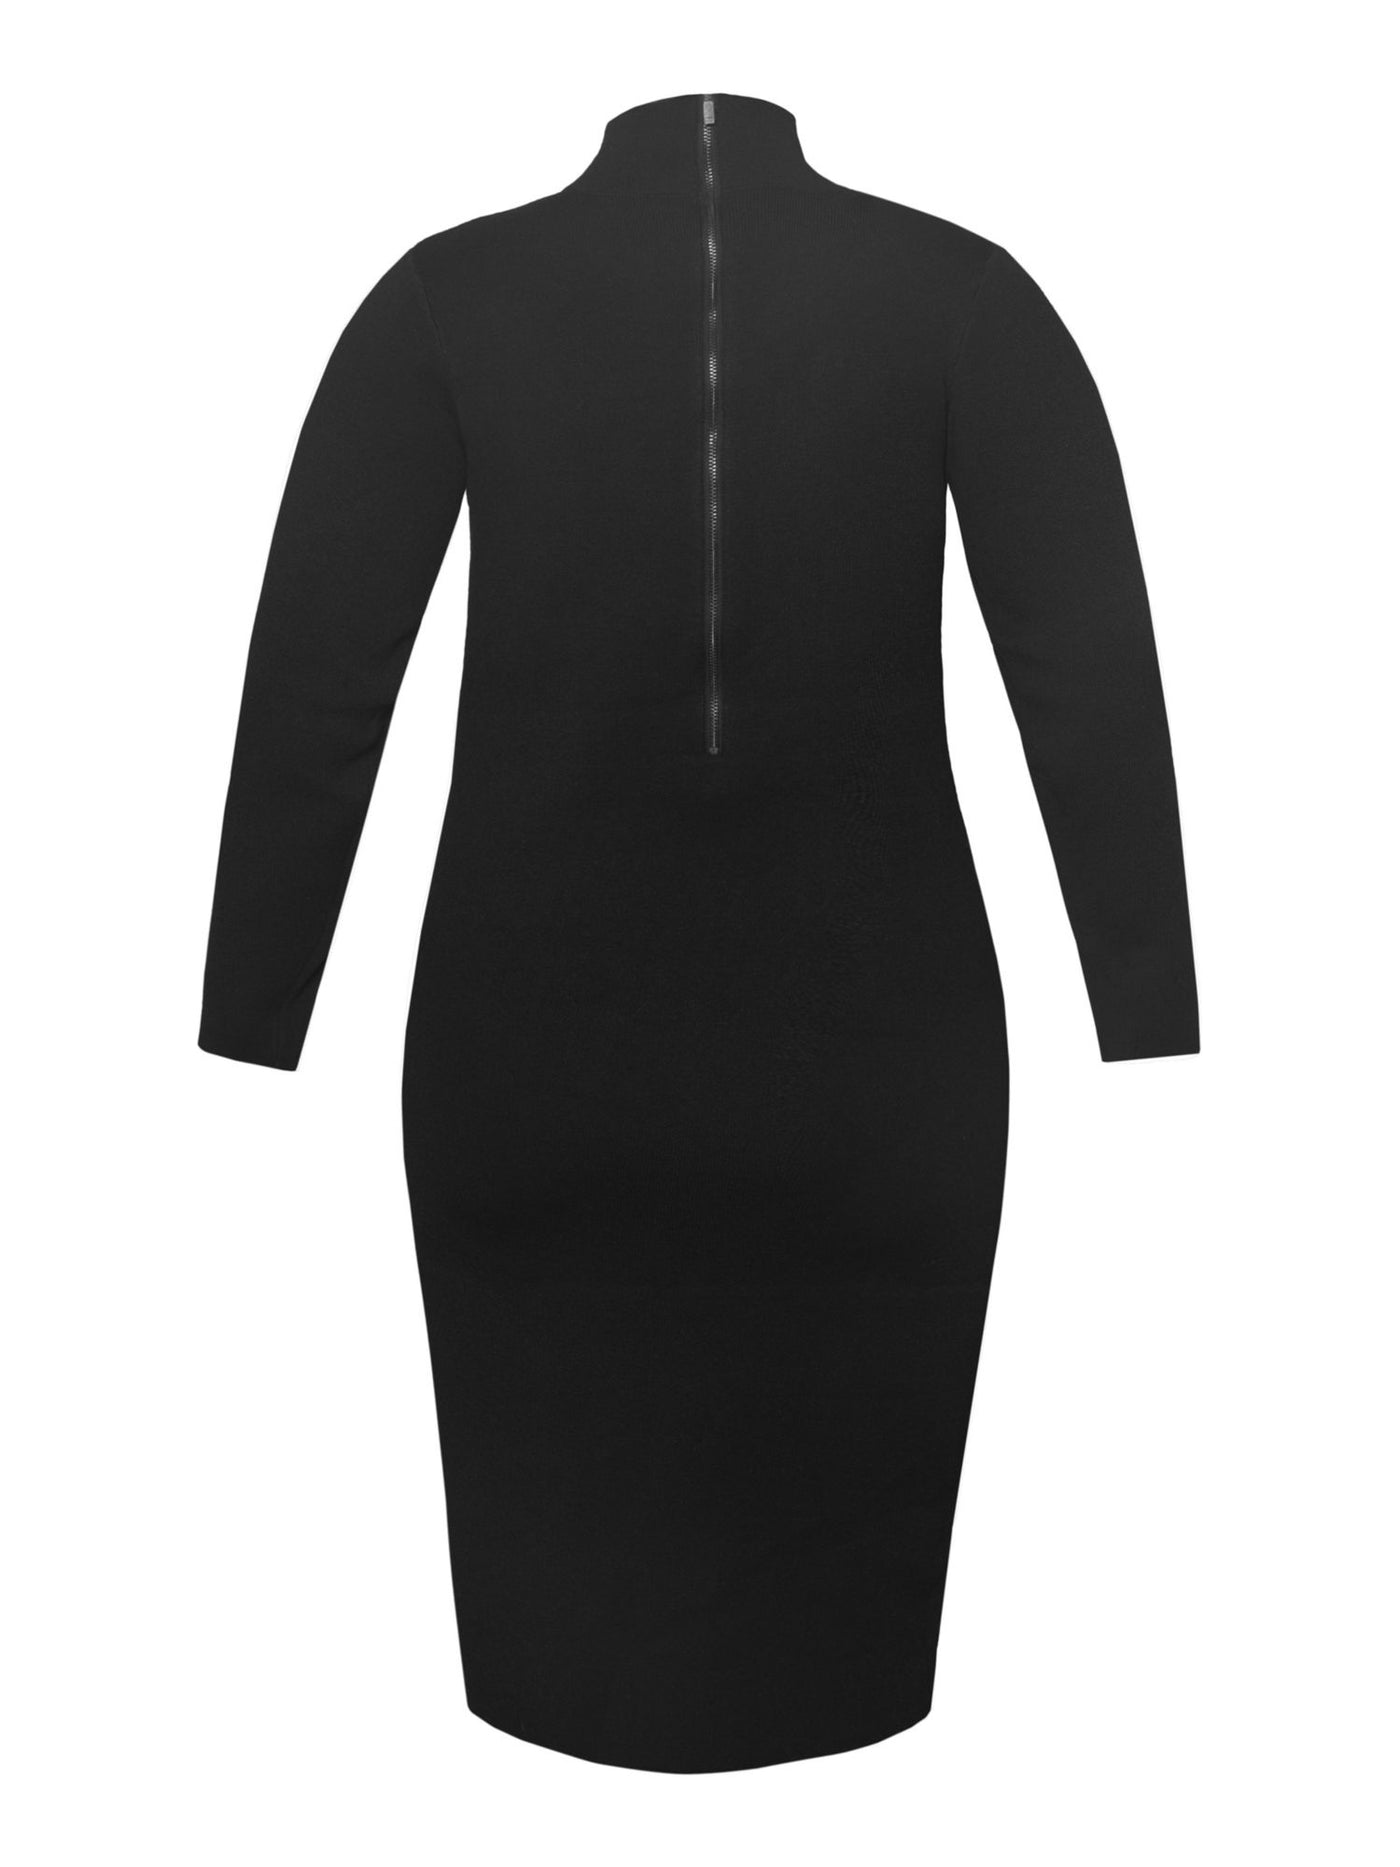 RACHEL RACHEL ROY Womens Black Stretch Cut Out Zippered Unlined Long Sleeve Mock Neck Midi Wear To Work Sweater Dress Plus 1X